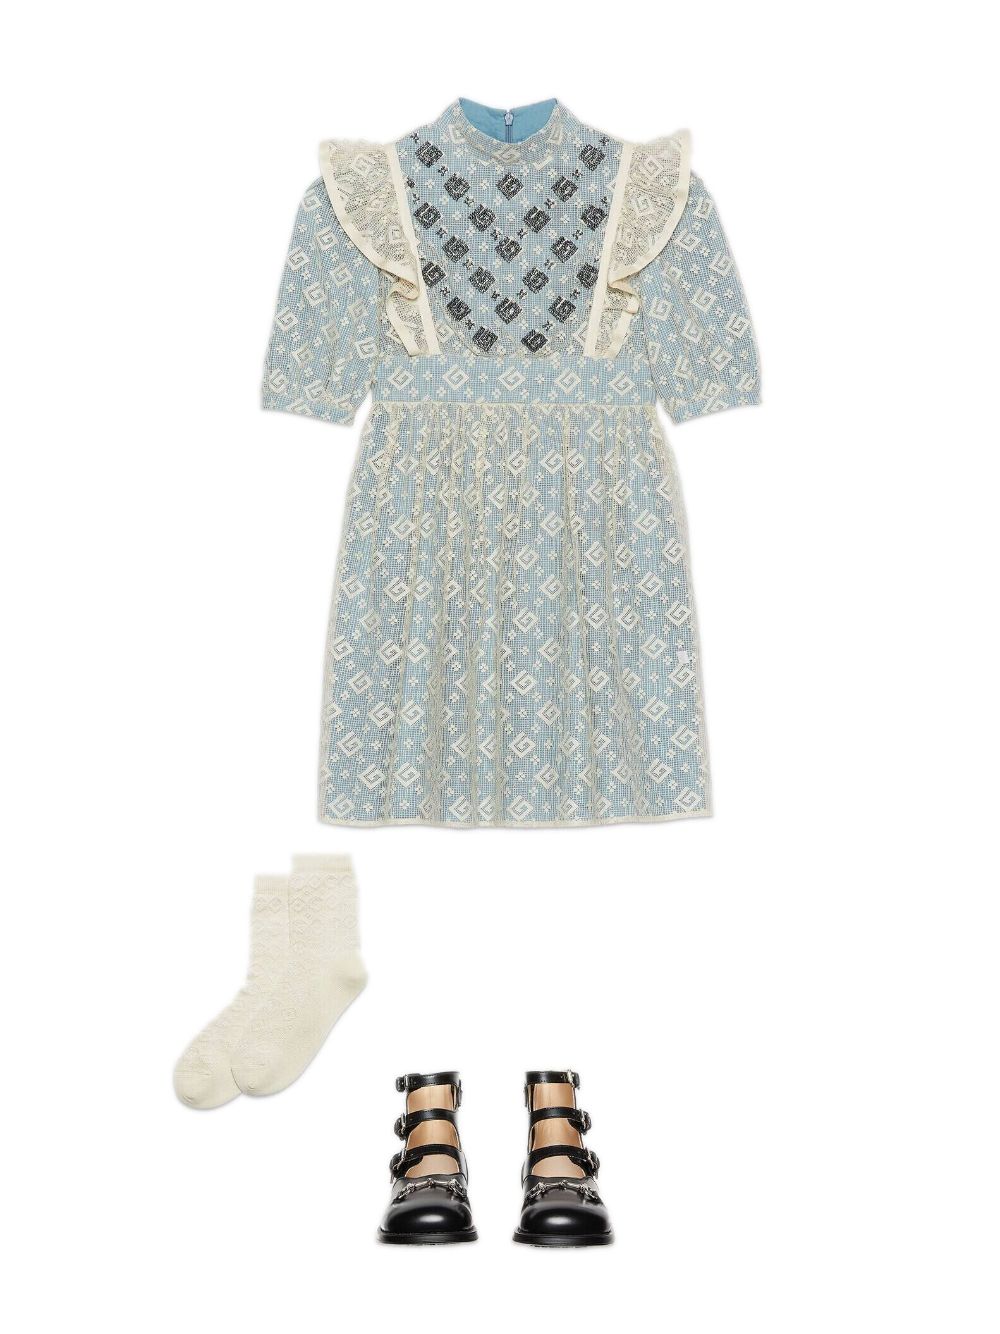 Robe bleu clair et ivoire pour petite fille, avec application sur toute la robe, jupe évasée